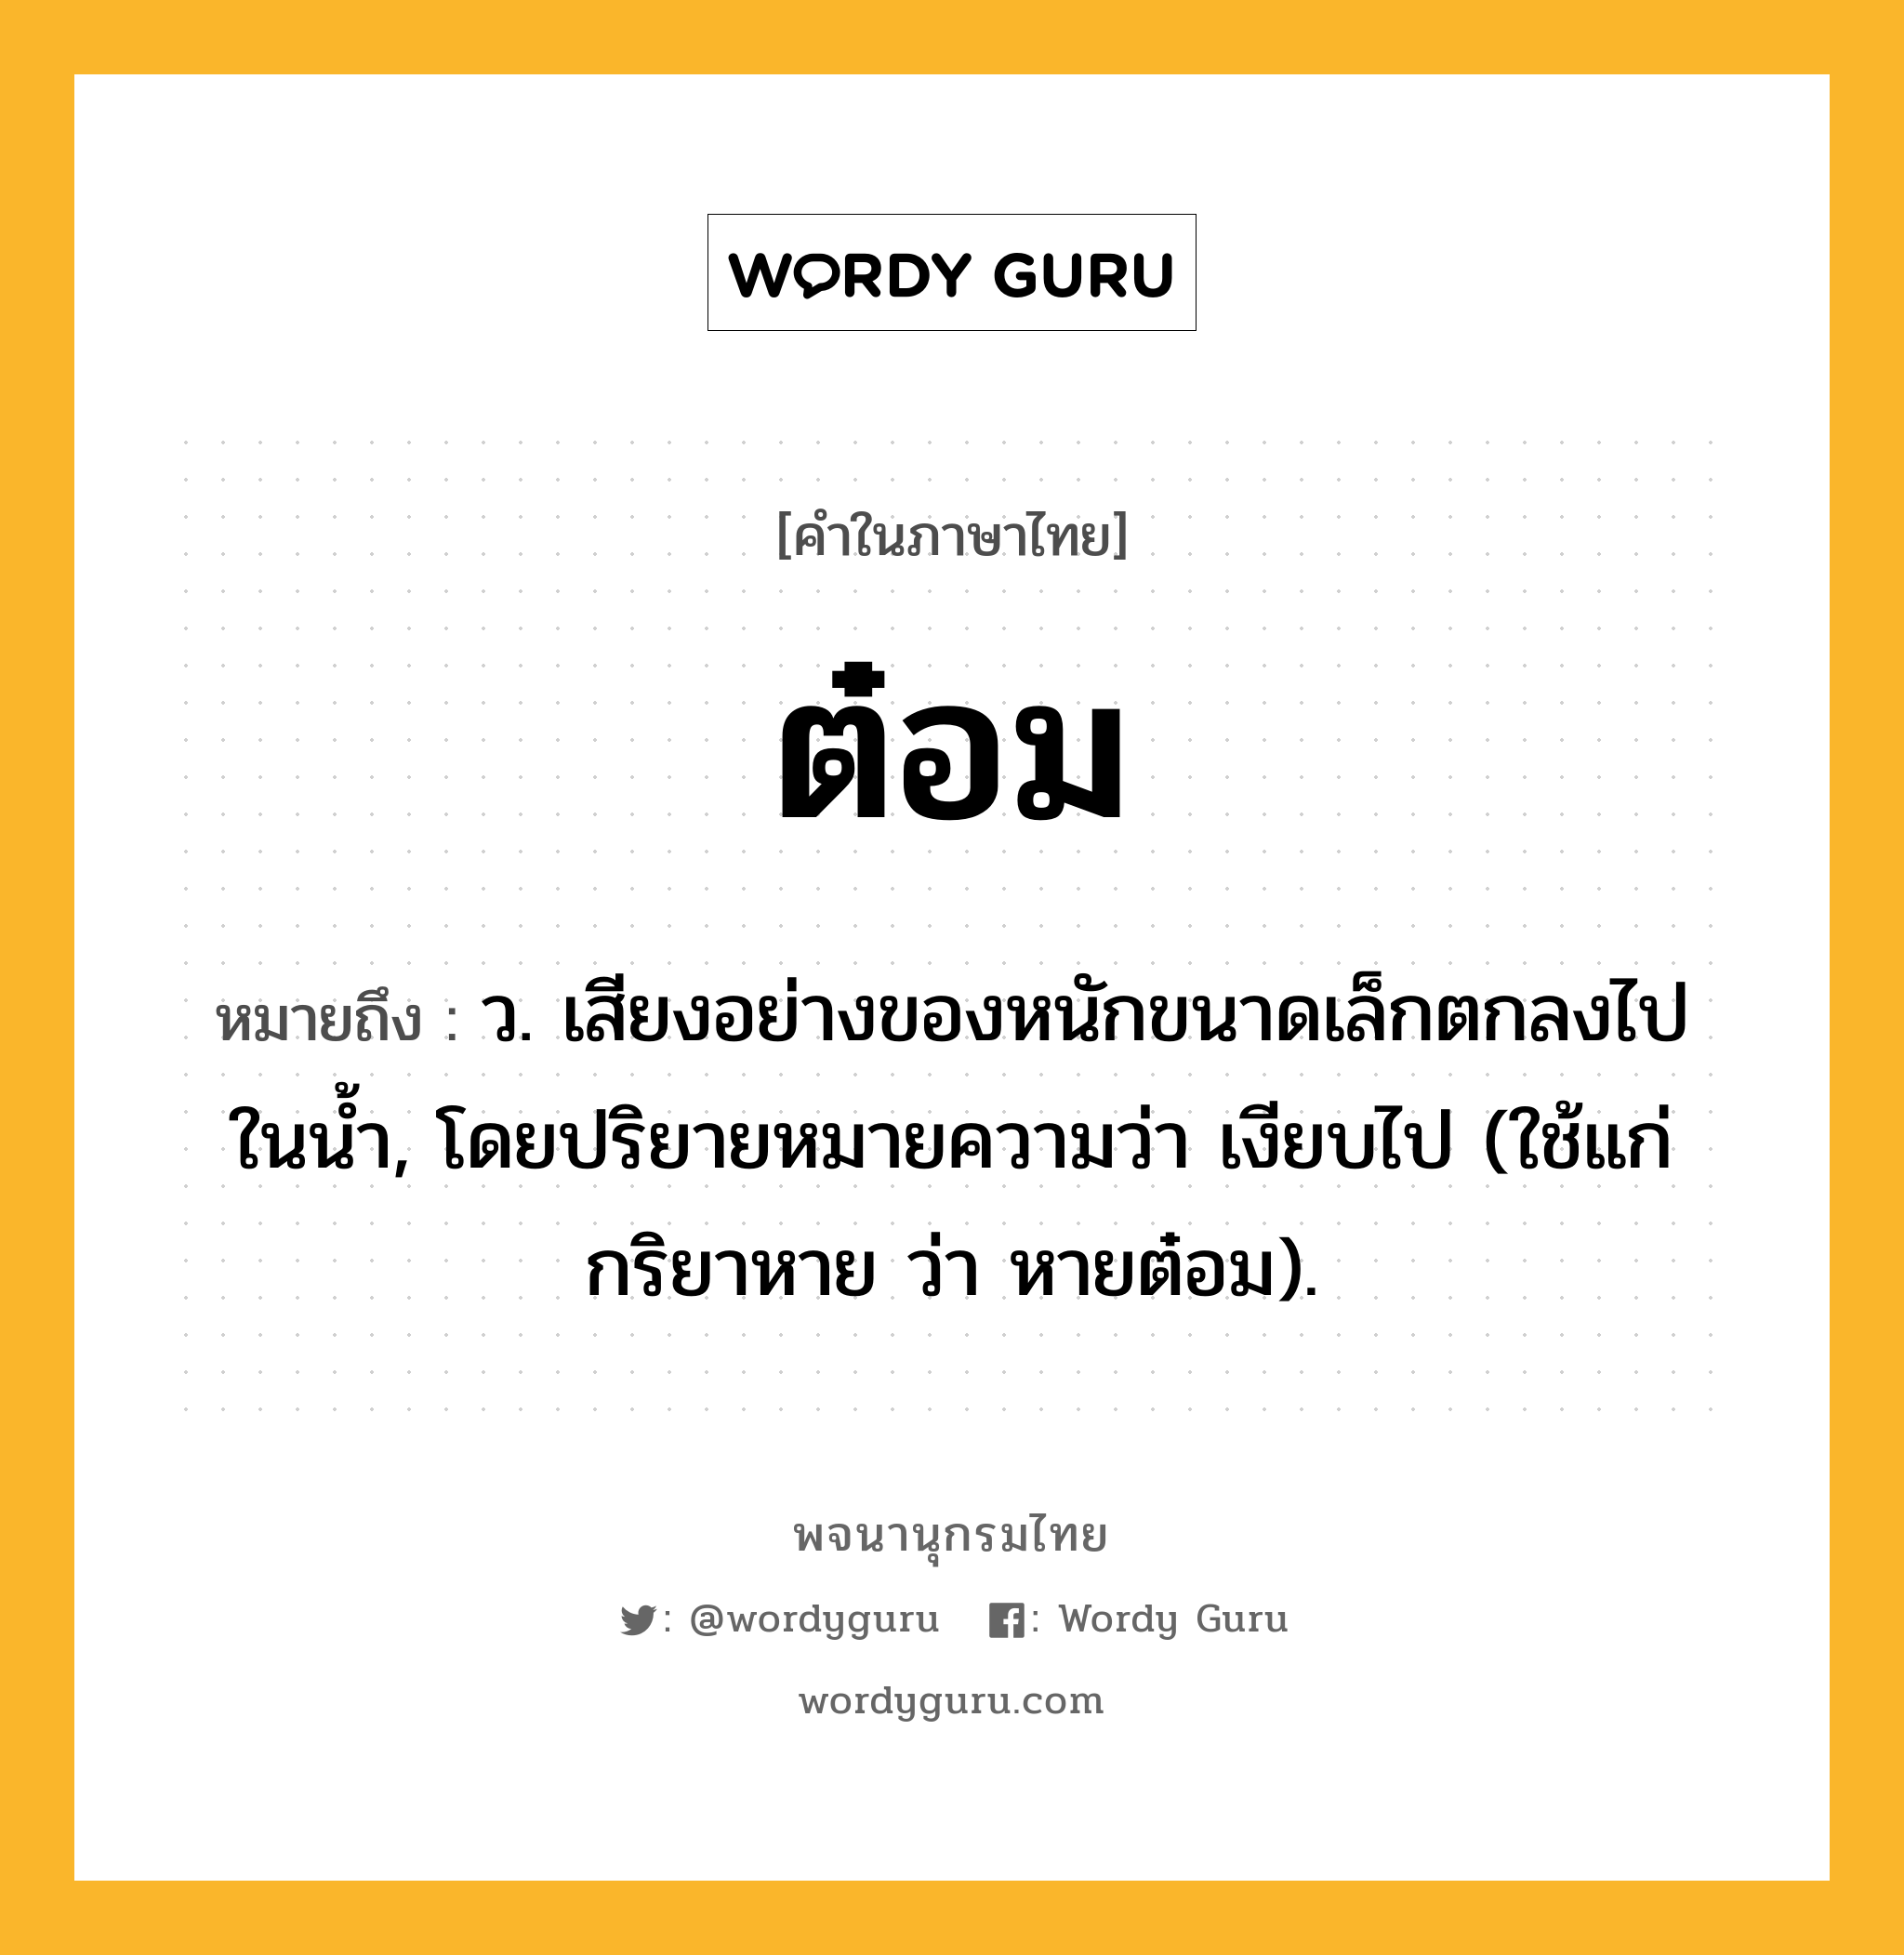 ต๋อม หมายถึงอะไร?, คำในภาษาไทย ต๋อม หมายถึง ว. เสียงอย่างของหนักขนาดเล็กตกลงไปในนํ้า, โดยปริยายหมายความว่า เงียบไป (ใช้แก่กริยาหาย ว่า หายต๋อม).